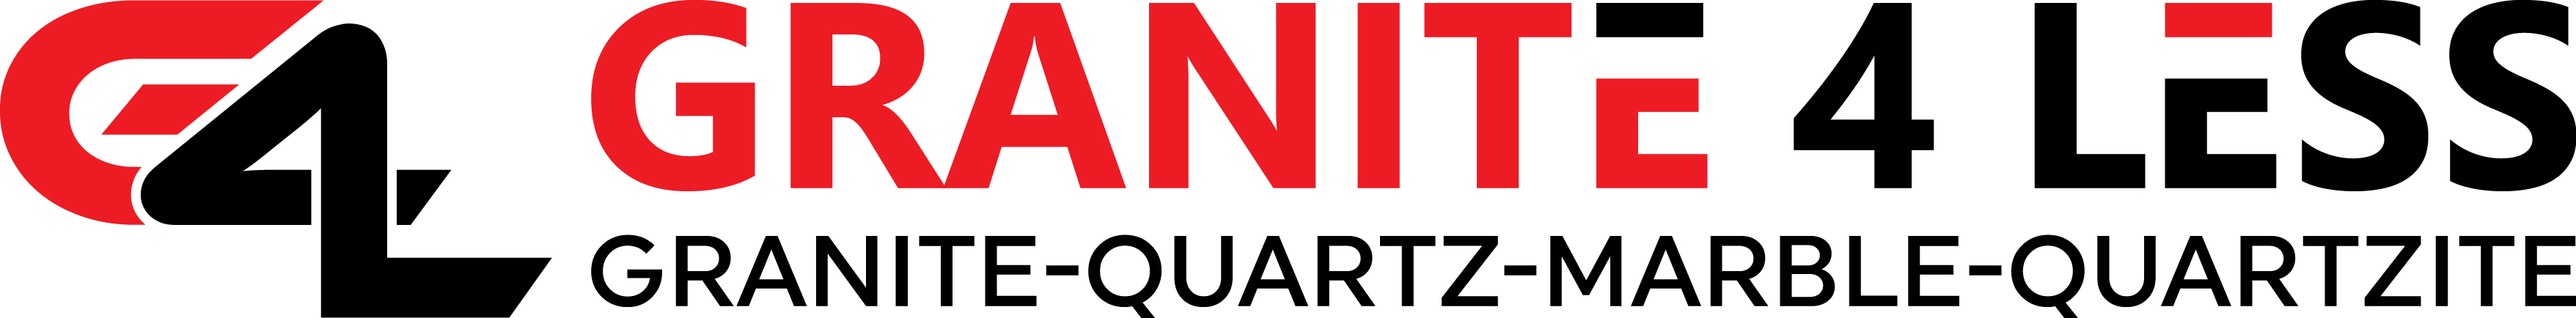 Granite 4 Less Logo